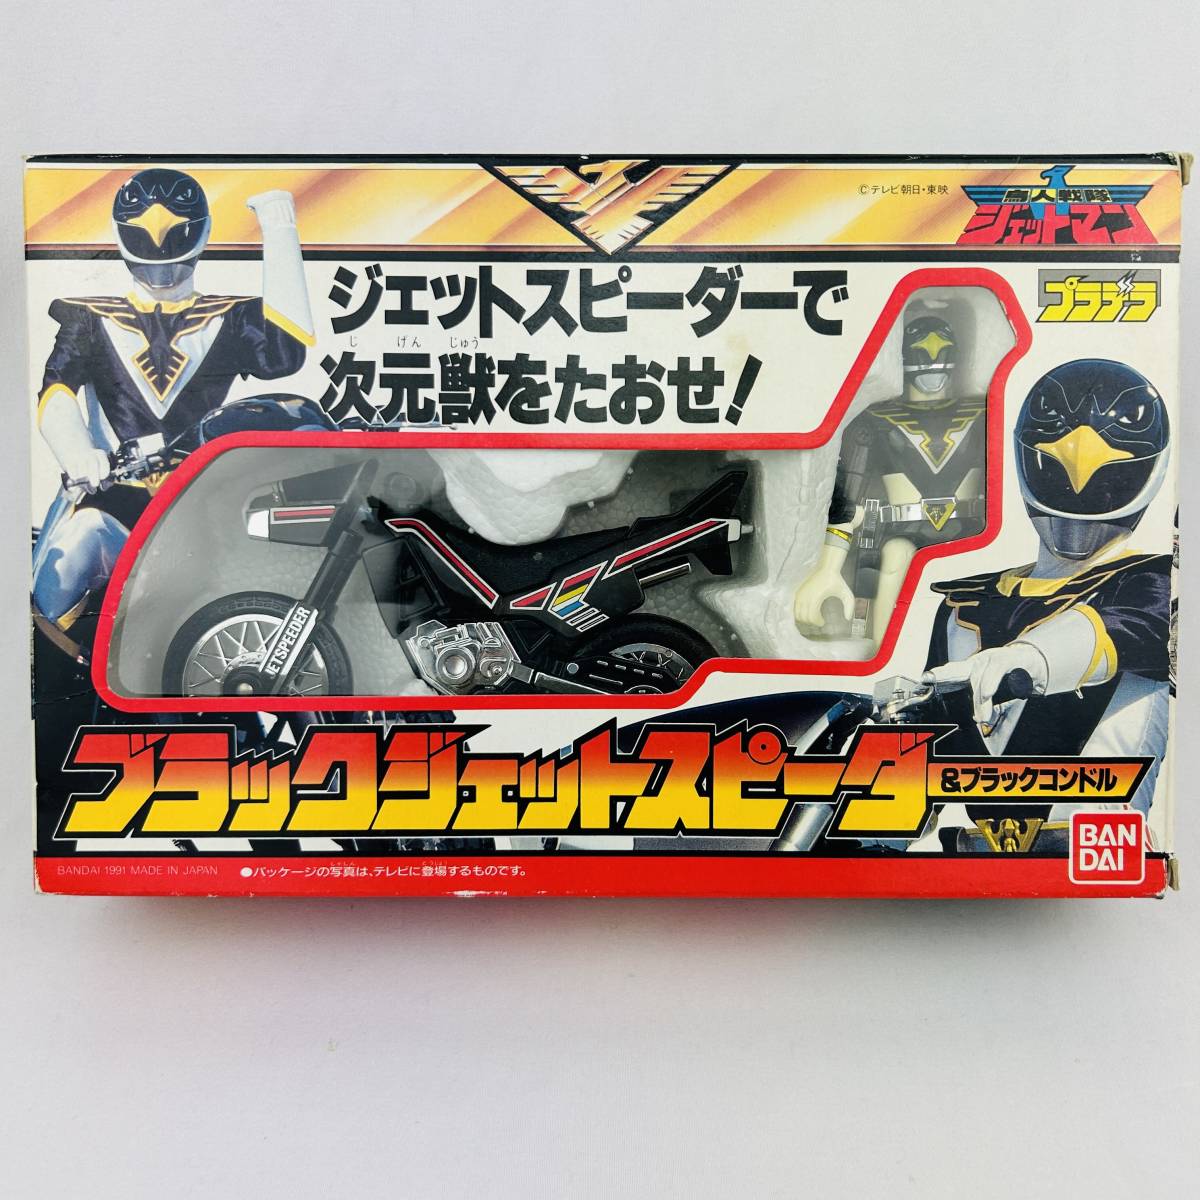 [Справочная доставка] Bandai Pradera Bird Squadron Jetman Black Jet Speerer и Black Condor Toy Robot Hero # 519813